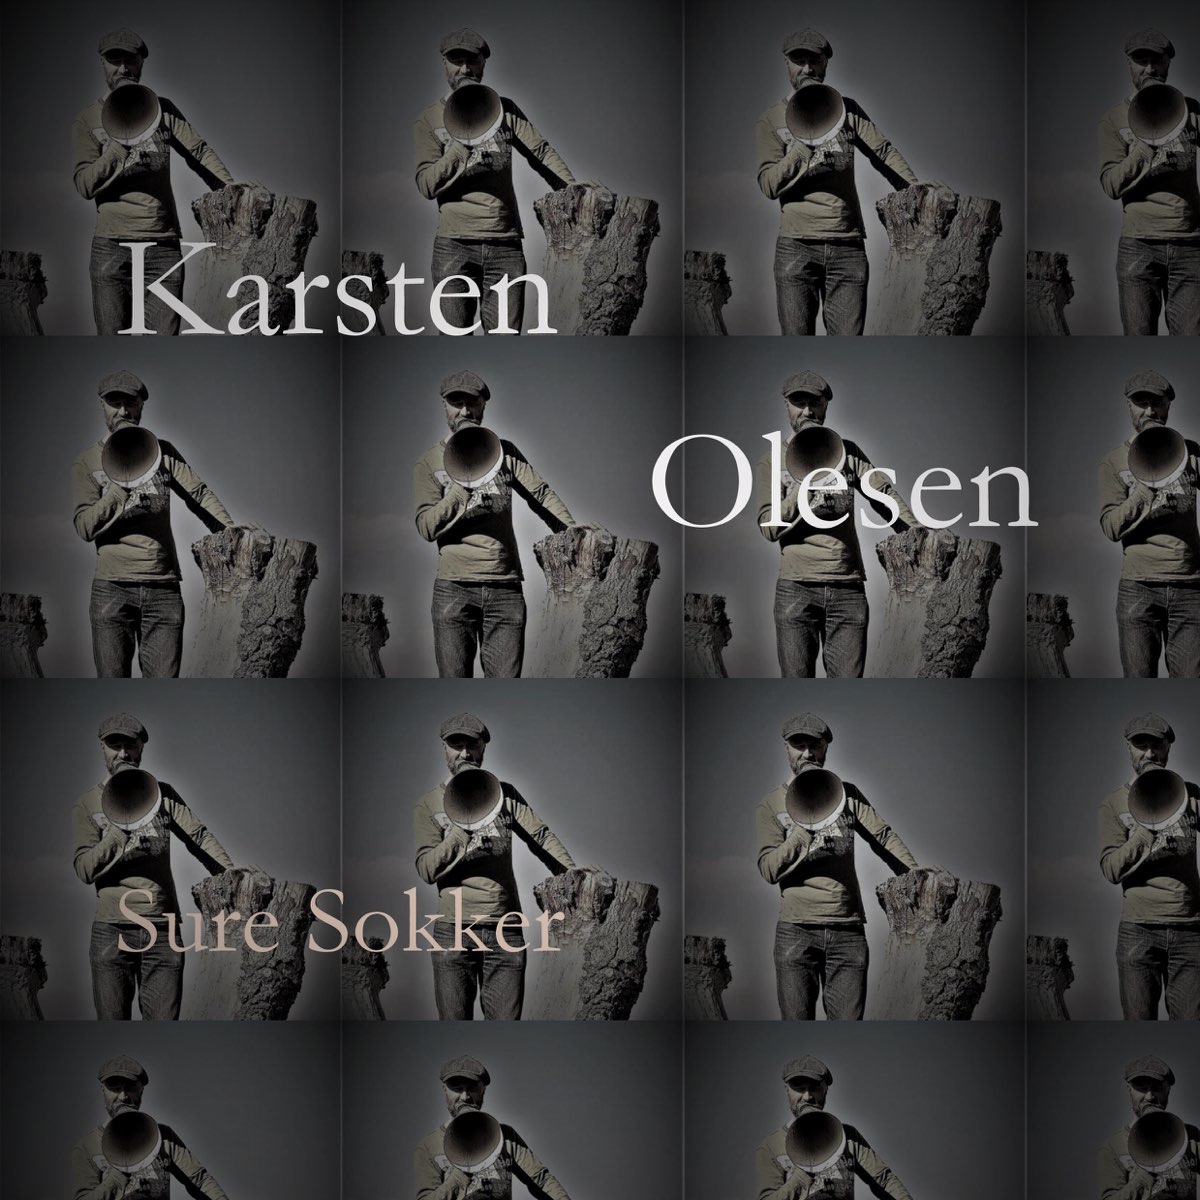 Sure Sokker - Single - Album by Karsten Olesen - Apple Music